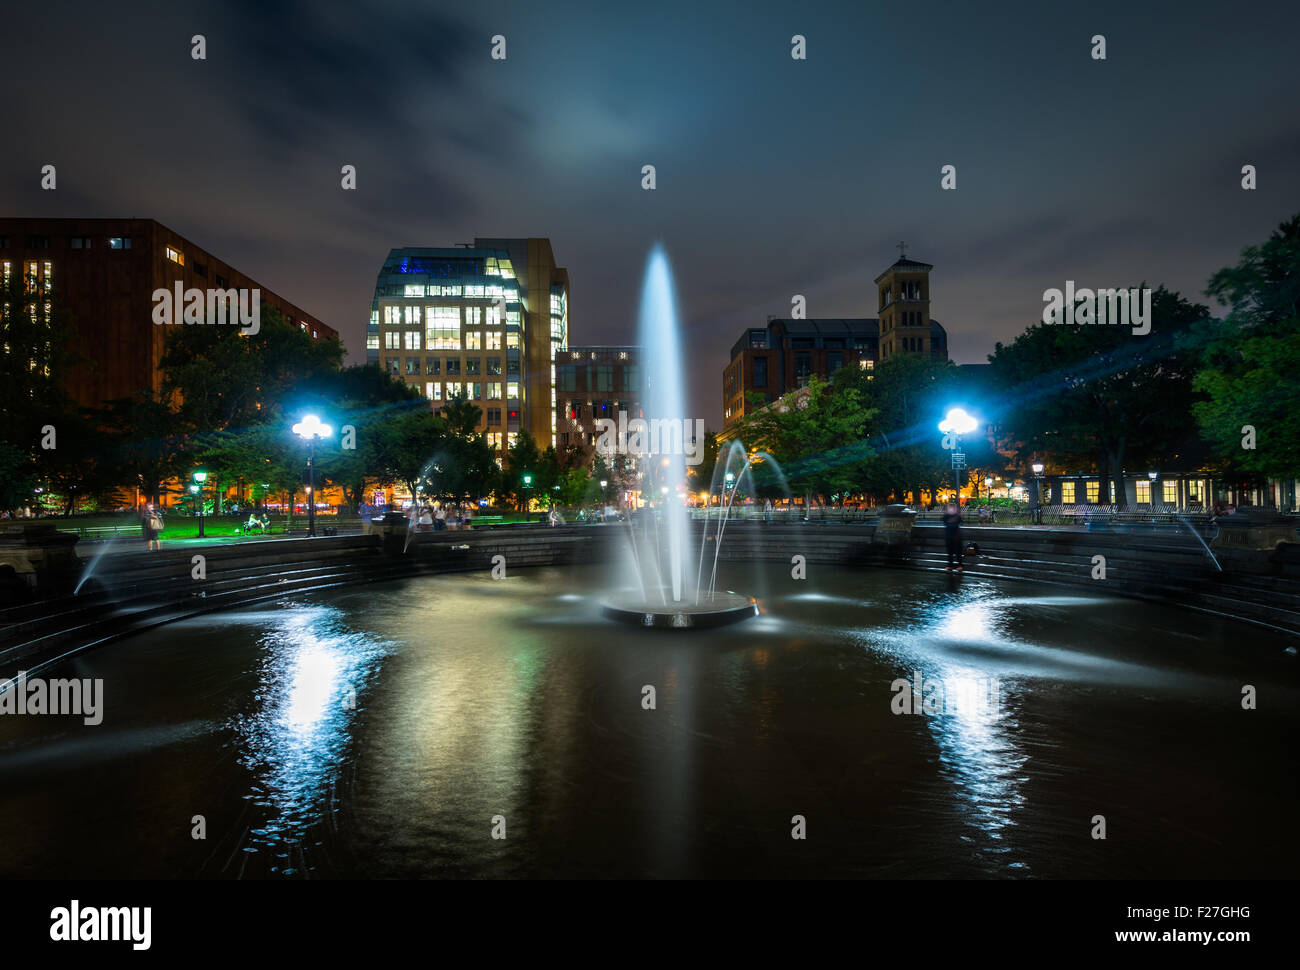 La fontana a Washington Square Park di notte, nel Greenwich Village, Manhattan, New York. Foto Stock